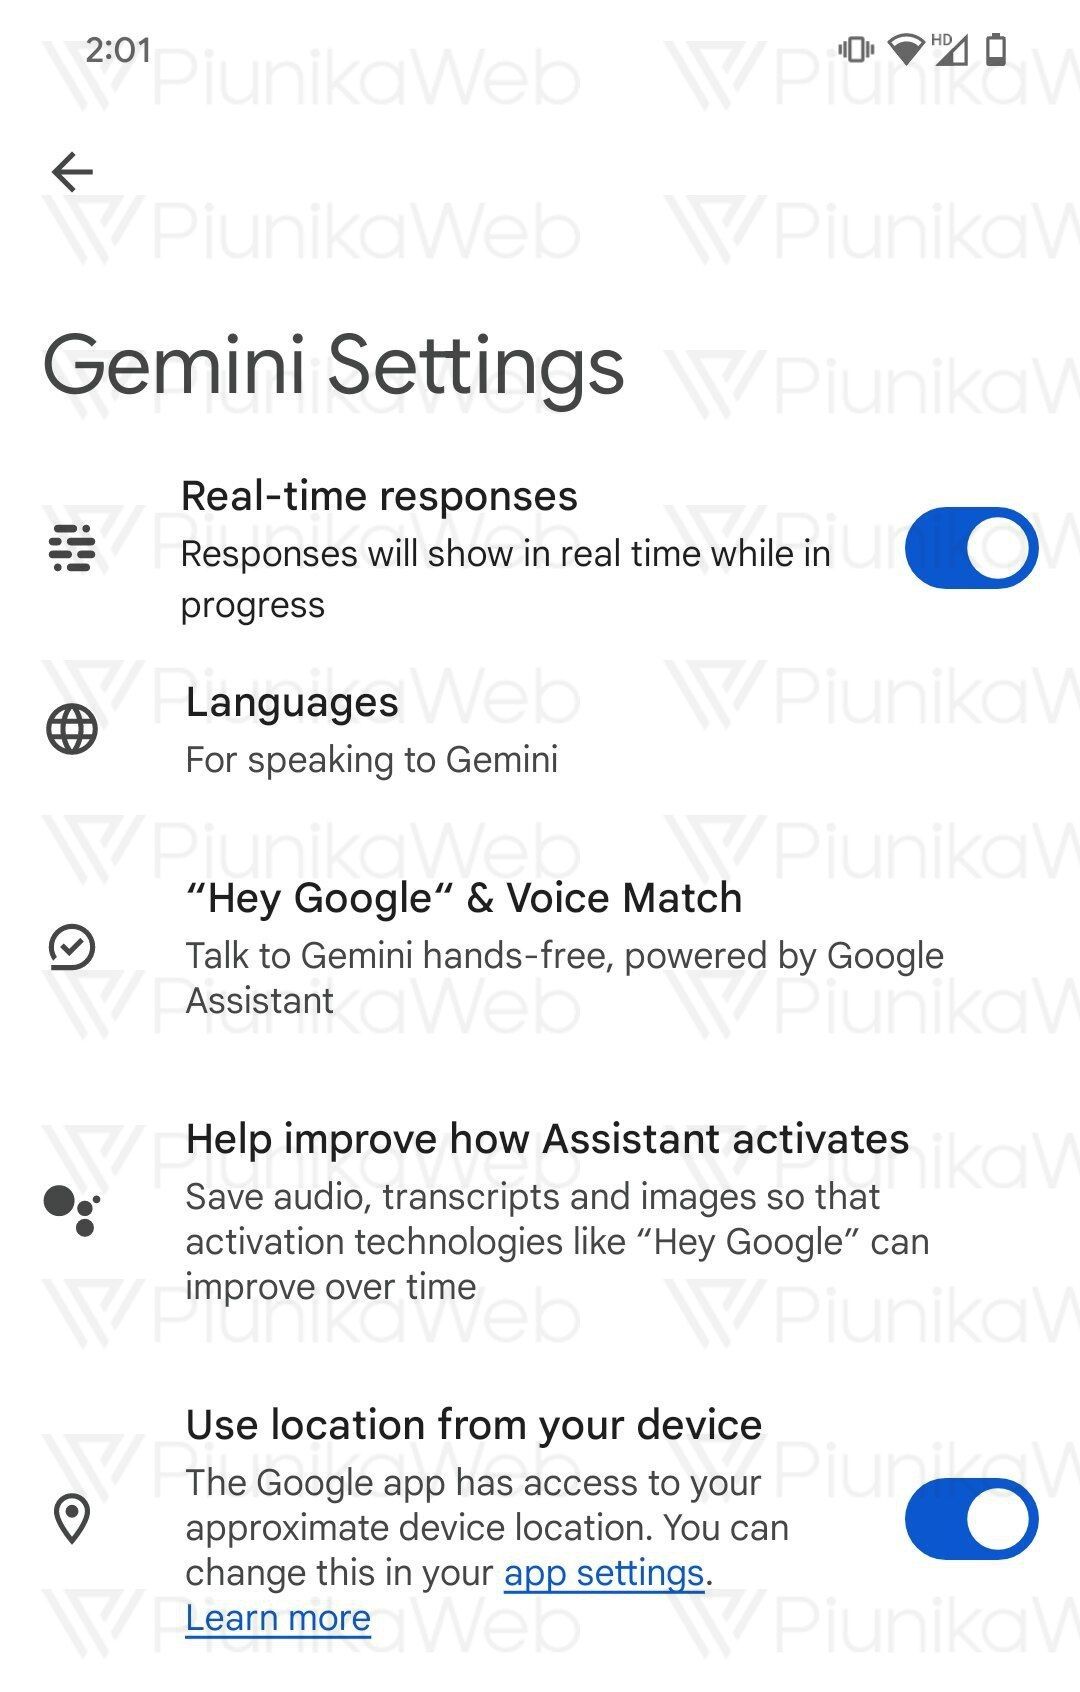 O aplicativo Google Gemini no Android produz respostas em tempo real